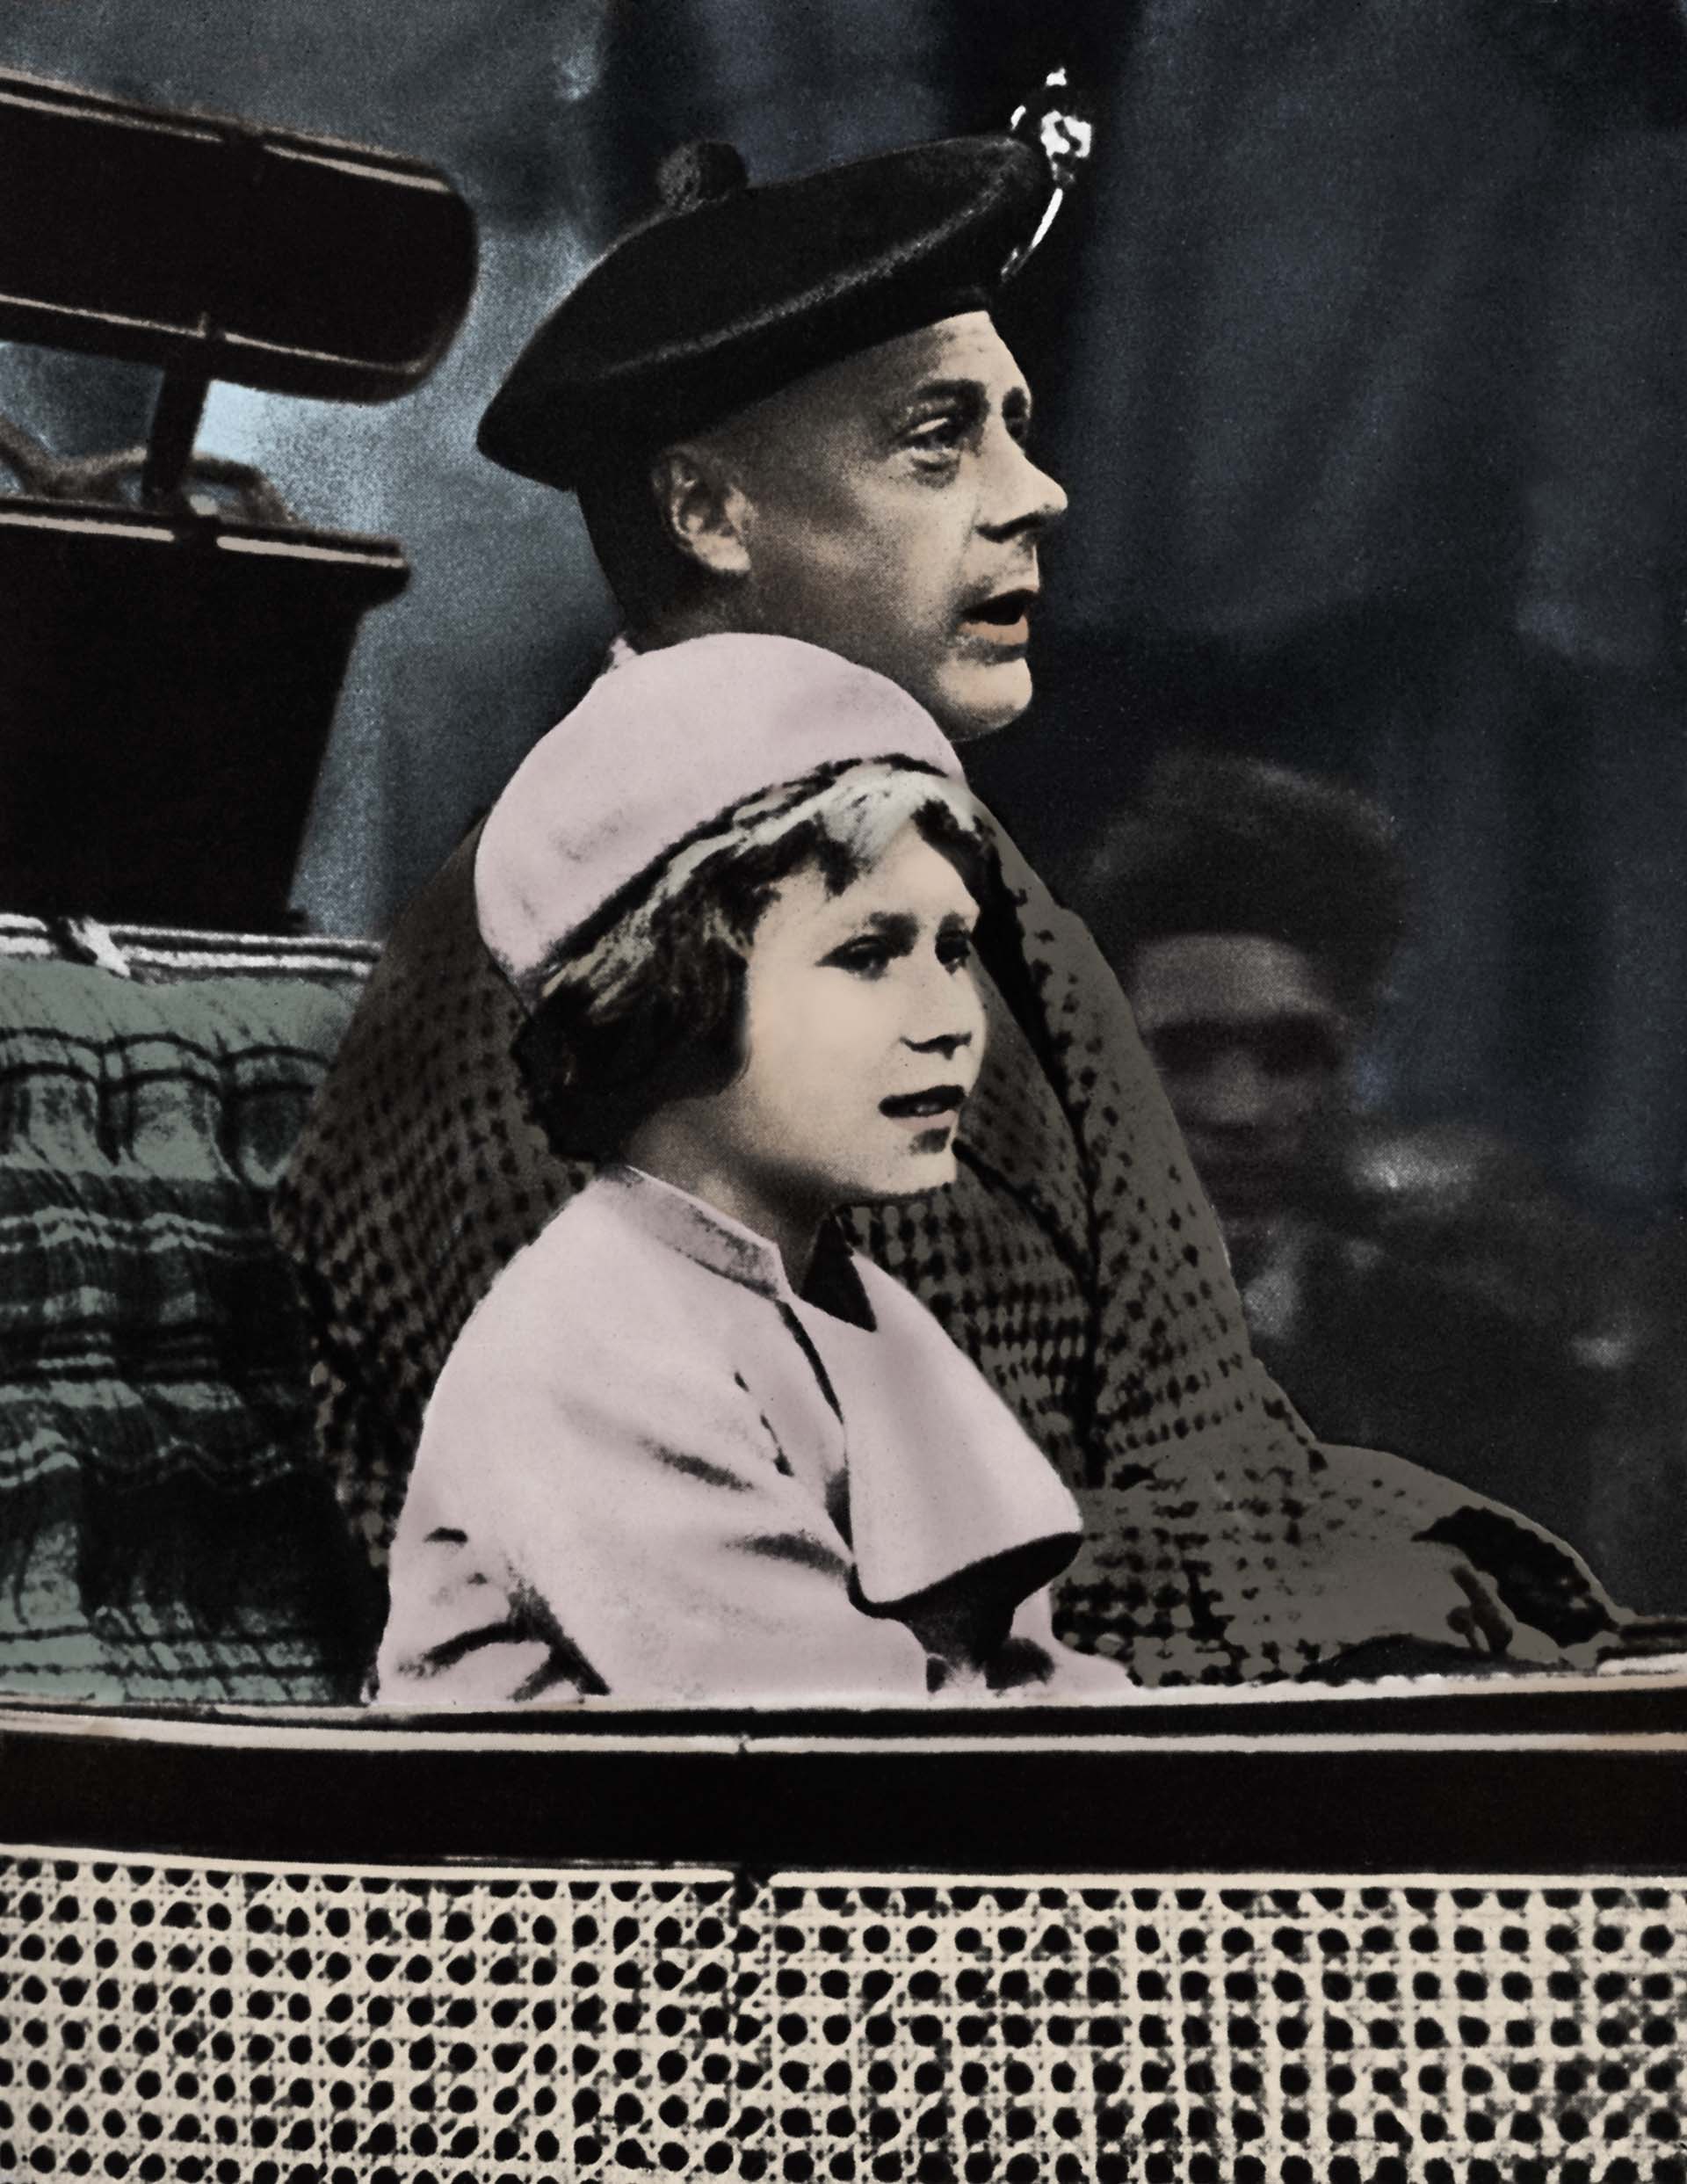 Isabel junto a su tío el rey Eduardo VIII, quien antepuso su amor por la celebridad estadounidense, Wallis Simpson, y abdicó a favor de su hermano cuando los primeros ministros del Reino Unido no le permitieron casarse con su amada por estar doblemente divorciada. Así, Isabel se convirtió en la hija del rey Jorge VI y quedó en el segundo puesto de la línea de sucesión al trono